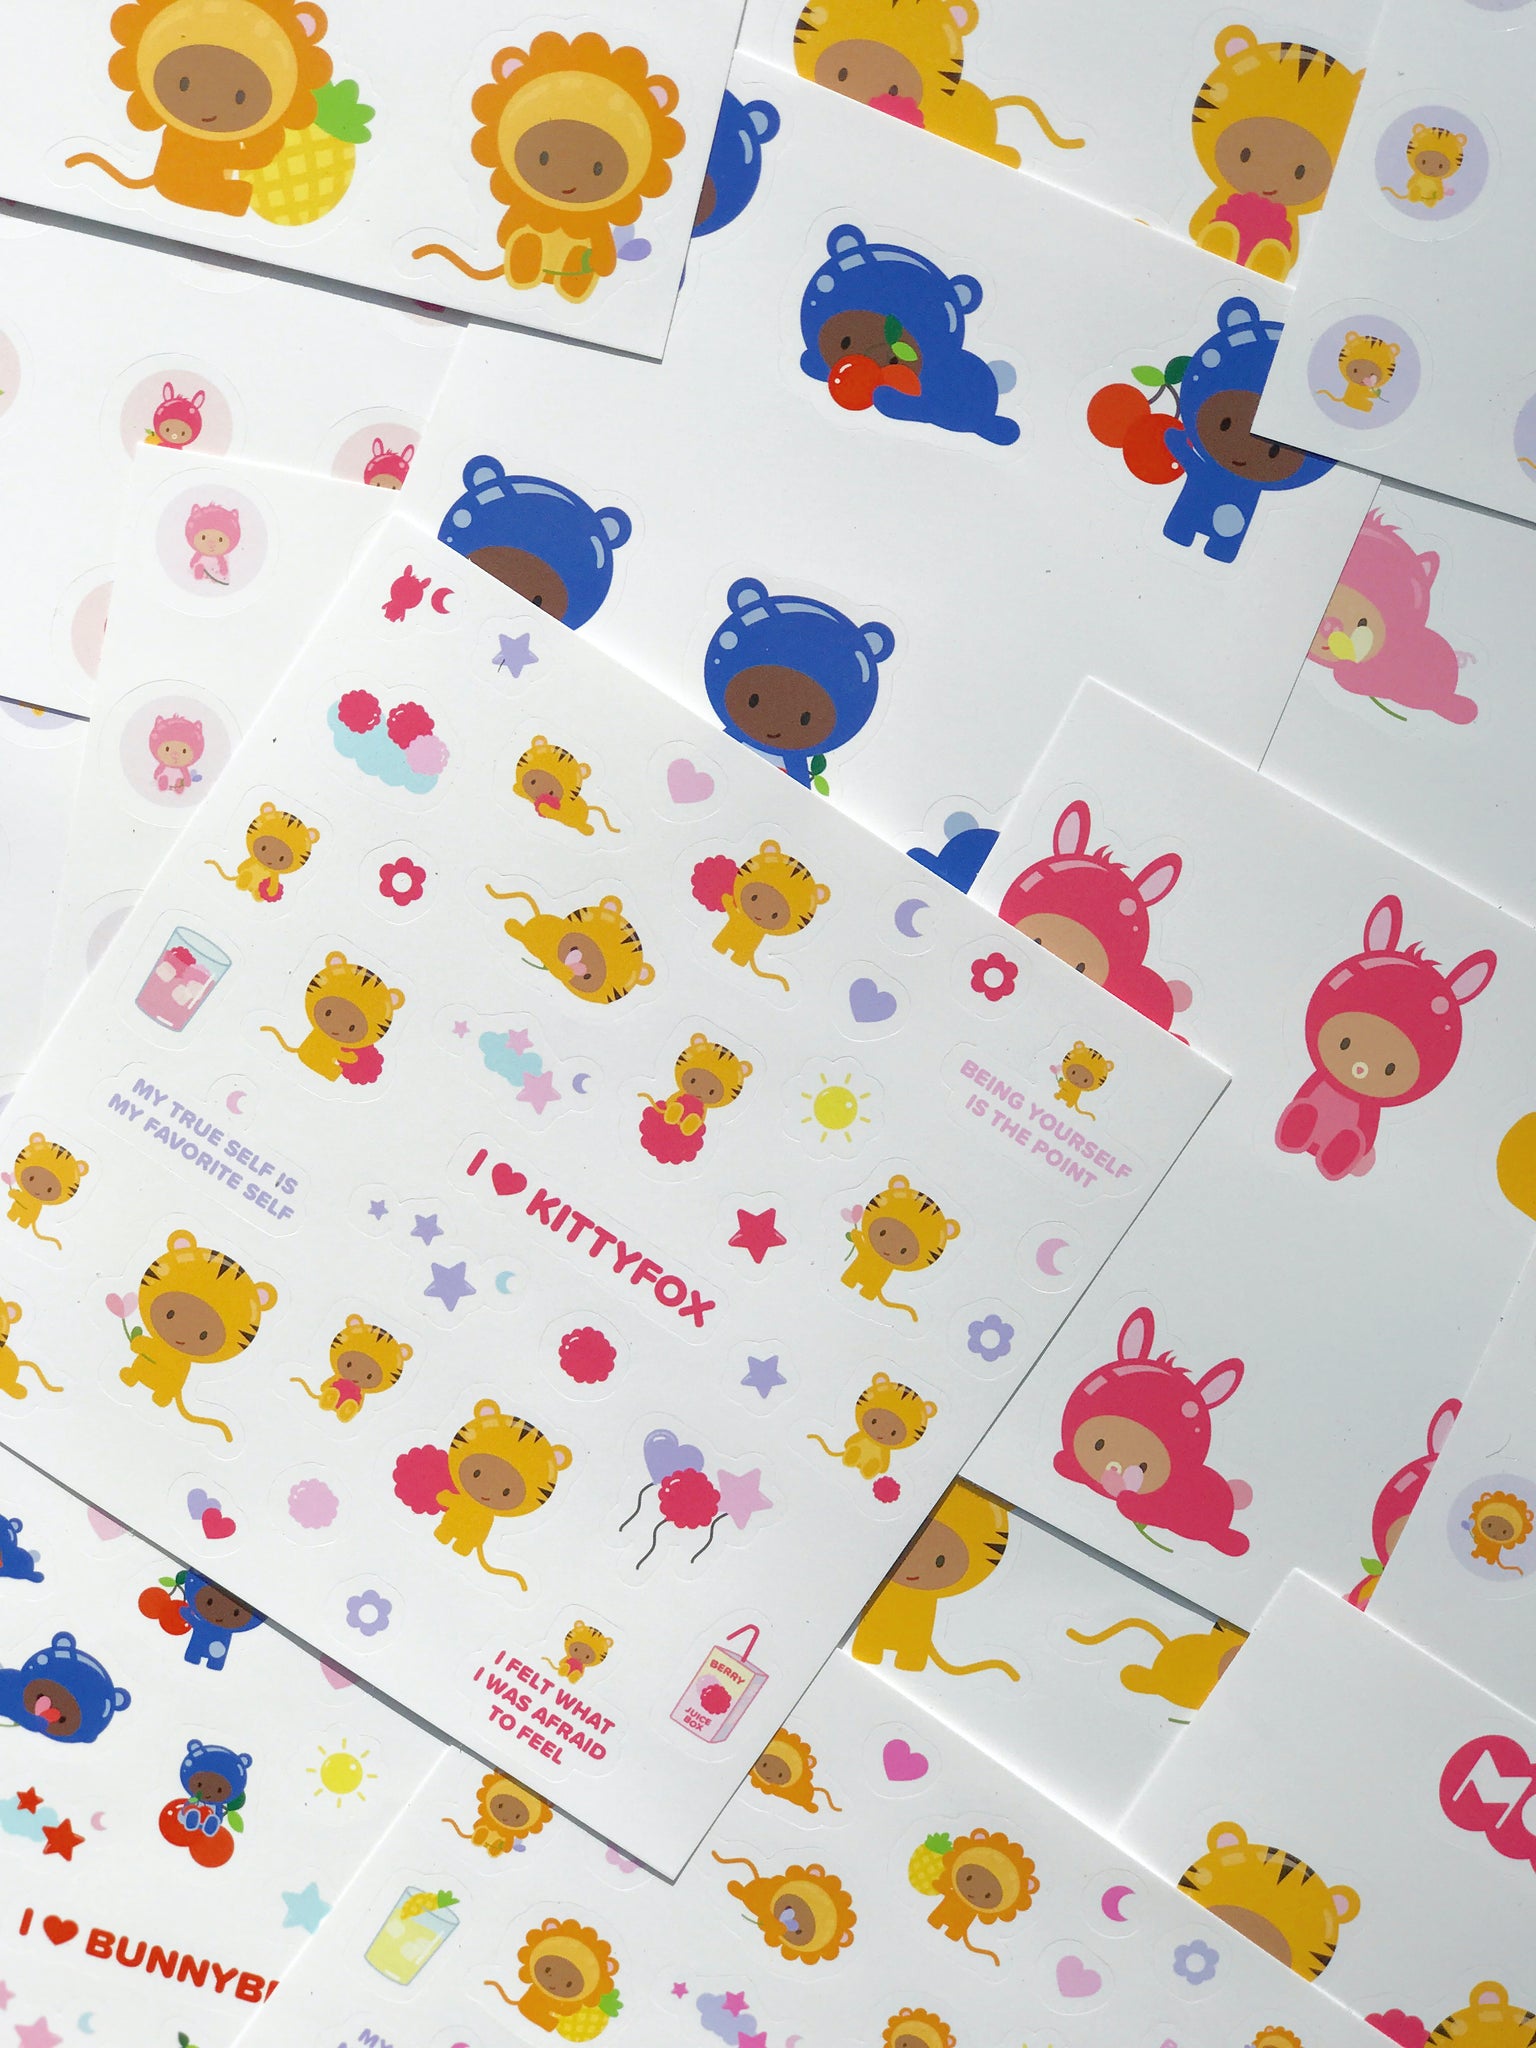 I <3 Kittyfox Sticker Sheet